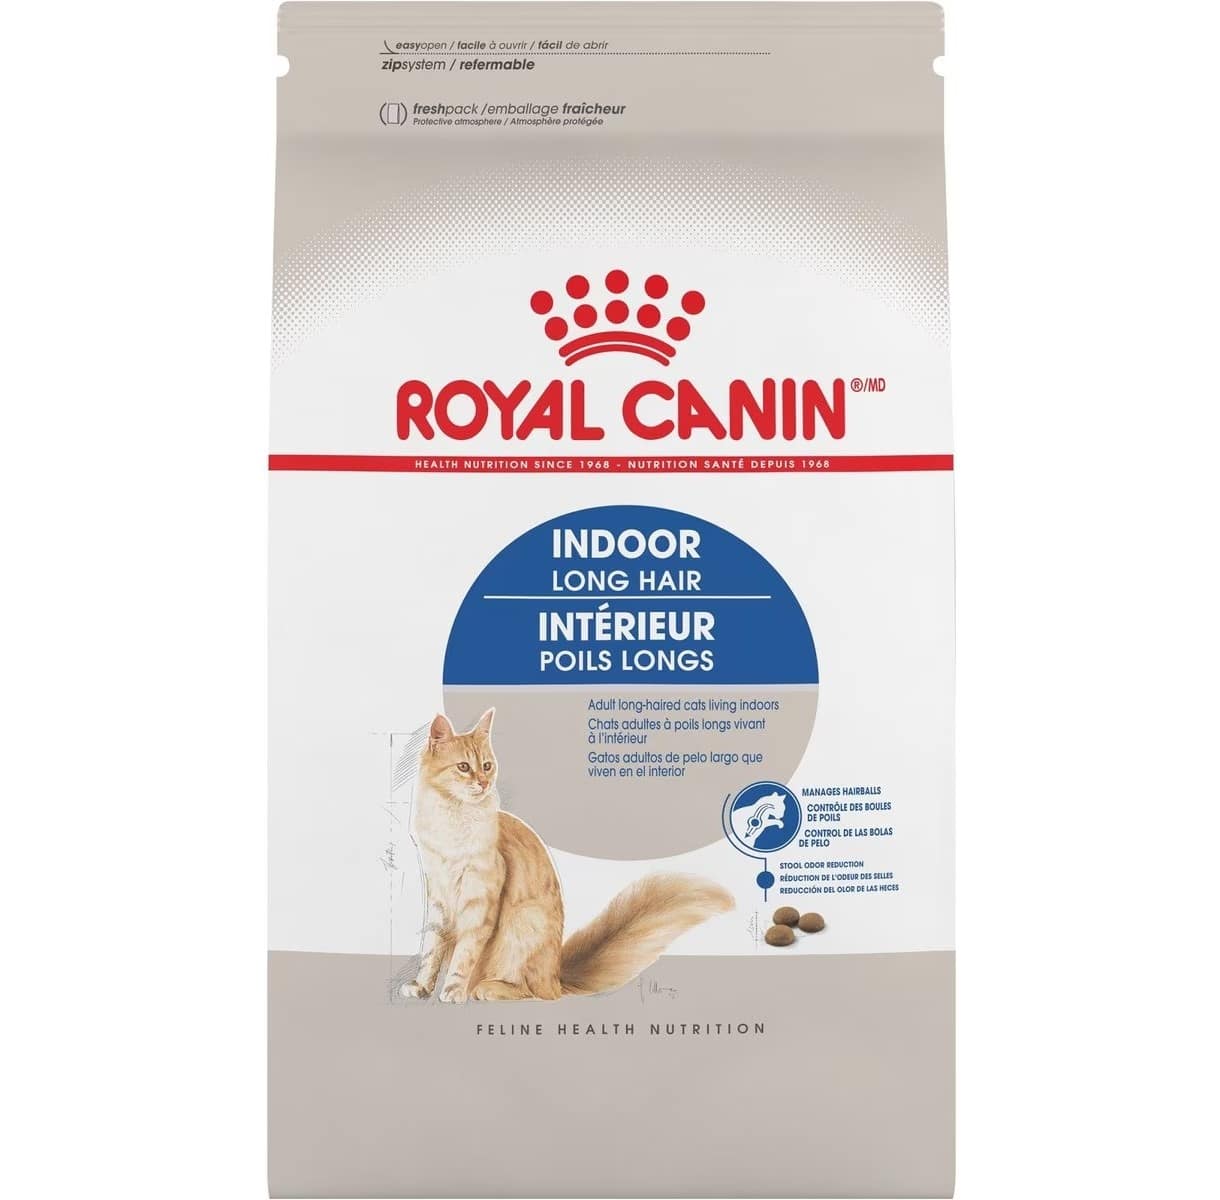 Royal Canin Feline Health Nutrition Indoor Long Hair Adult Dry Cat Food